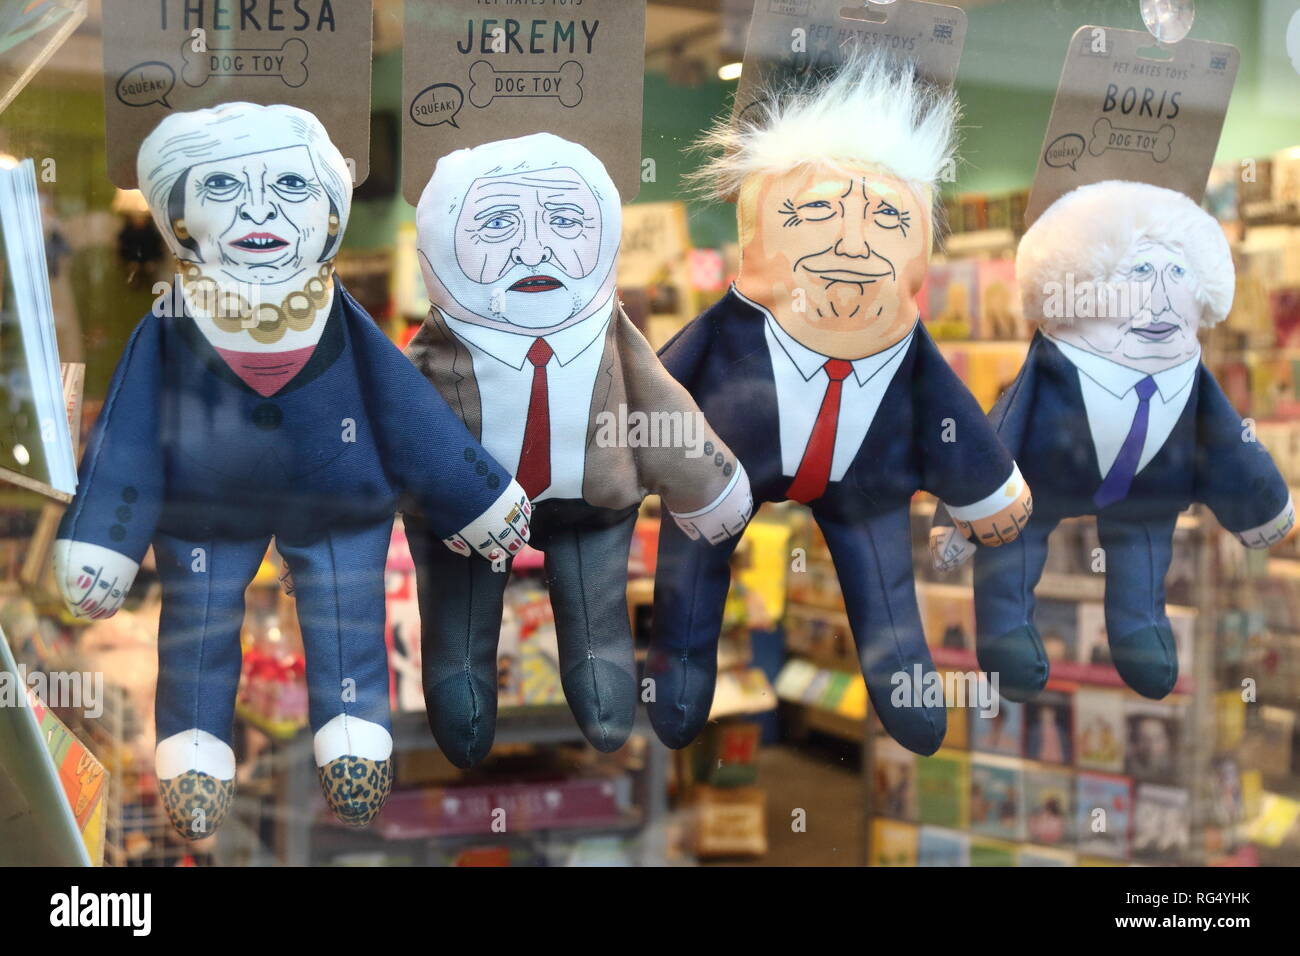 Les politiciens sont des marionnettes humoristiques vu en vente à la boutique de Londres - Theresa Mai (Premier ministre britannique), Jeremy Corbyn (leader du parti travailliste britannique) Donald Trump (Président des Etats-Unis) et Boris Johnson (ancien ministre des Affaires étrangères du Royaume-Uni et Pro Brexiteer) Banque D'Images